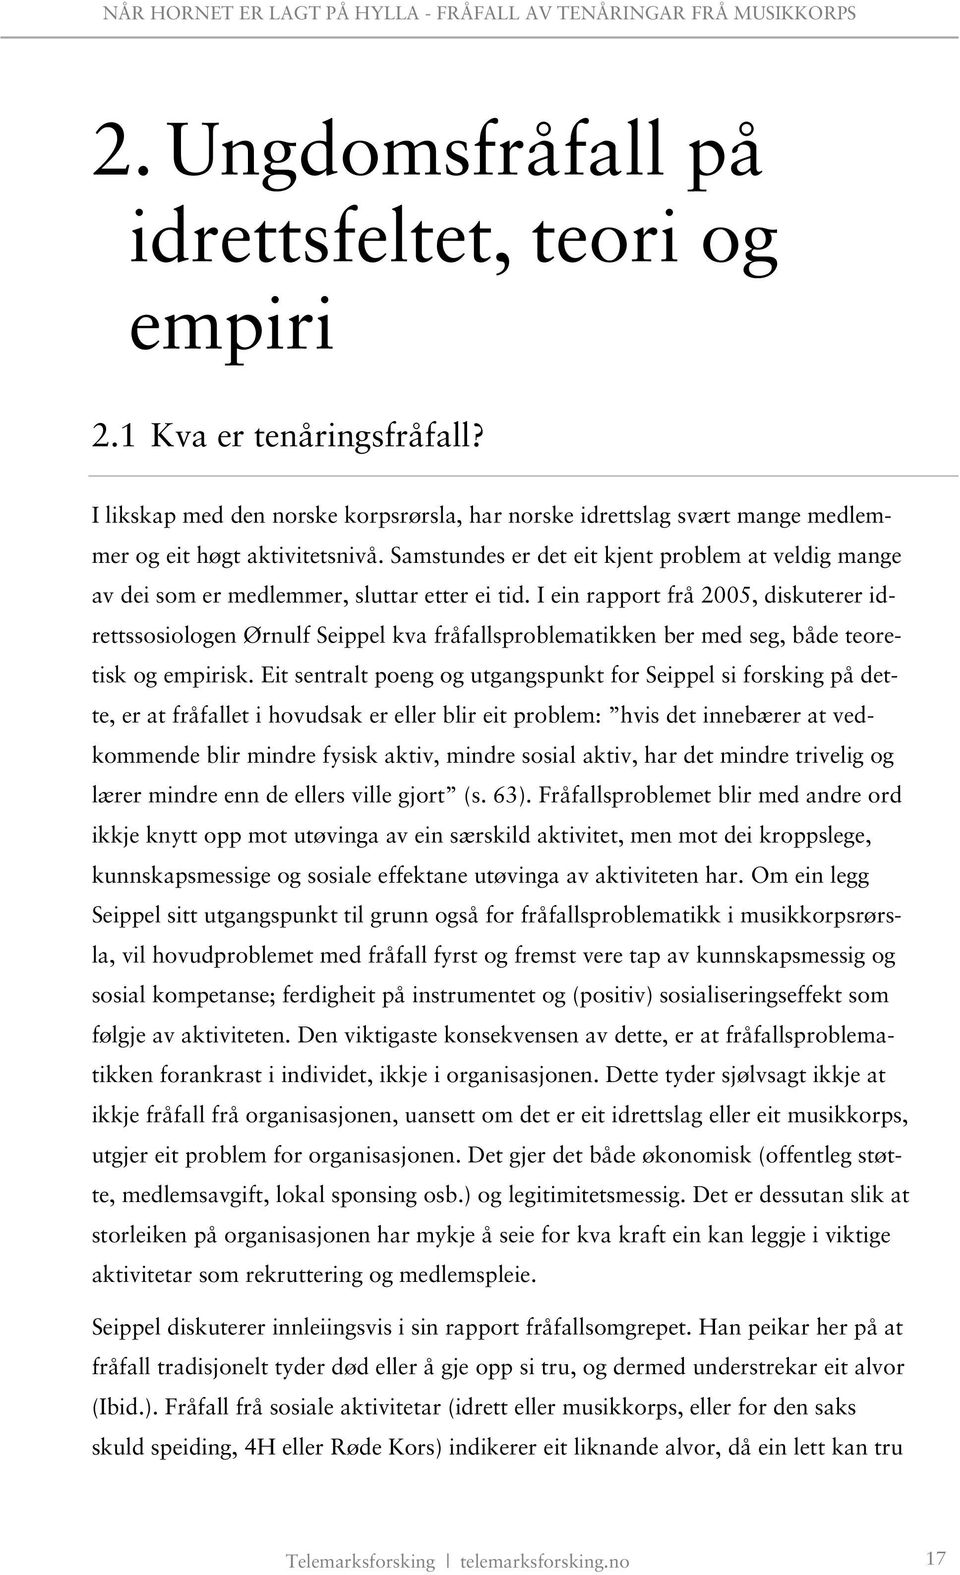 I ein rapport frå 2005, diskuterer idrettssosiologen Ørnulf Seippel kva fråfallsproblematikken ber med seg, både teoretisk og empirisk.